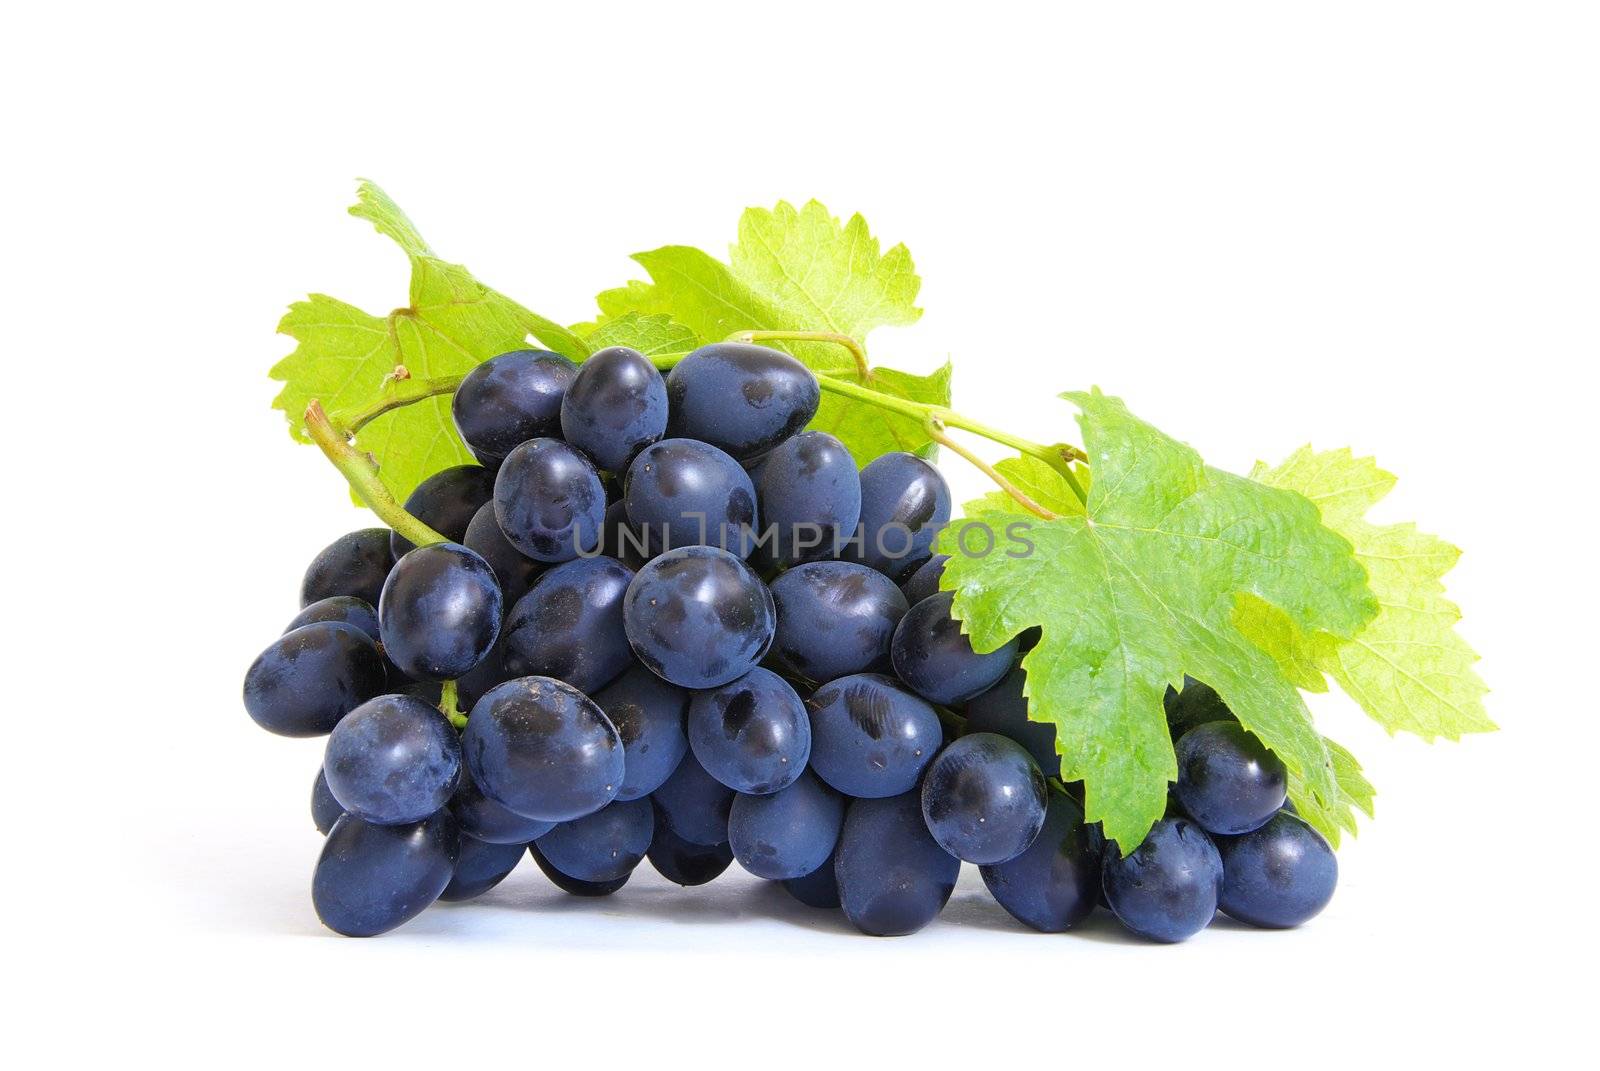  grapes  by Pakhnyushchyy